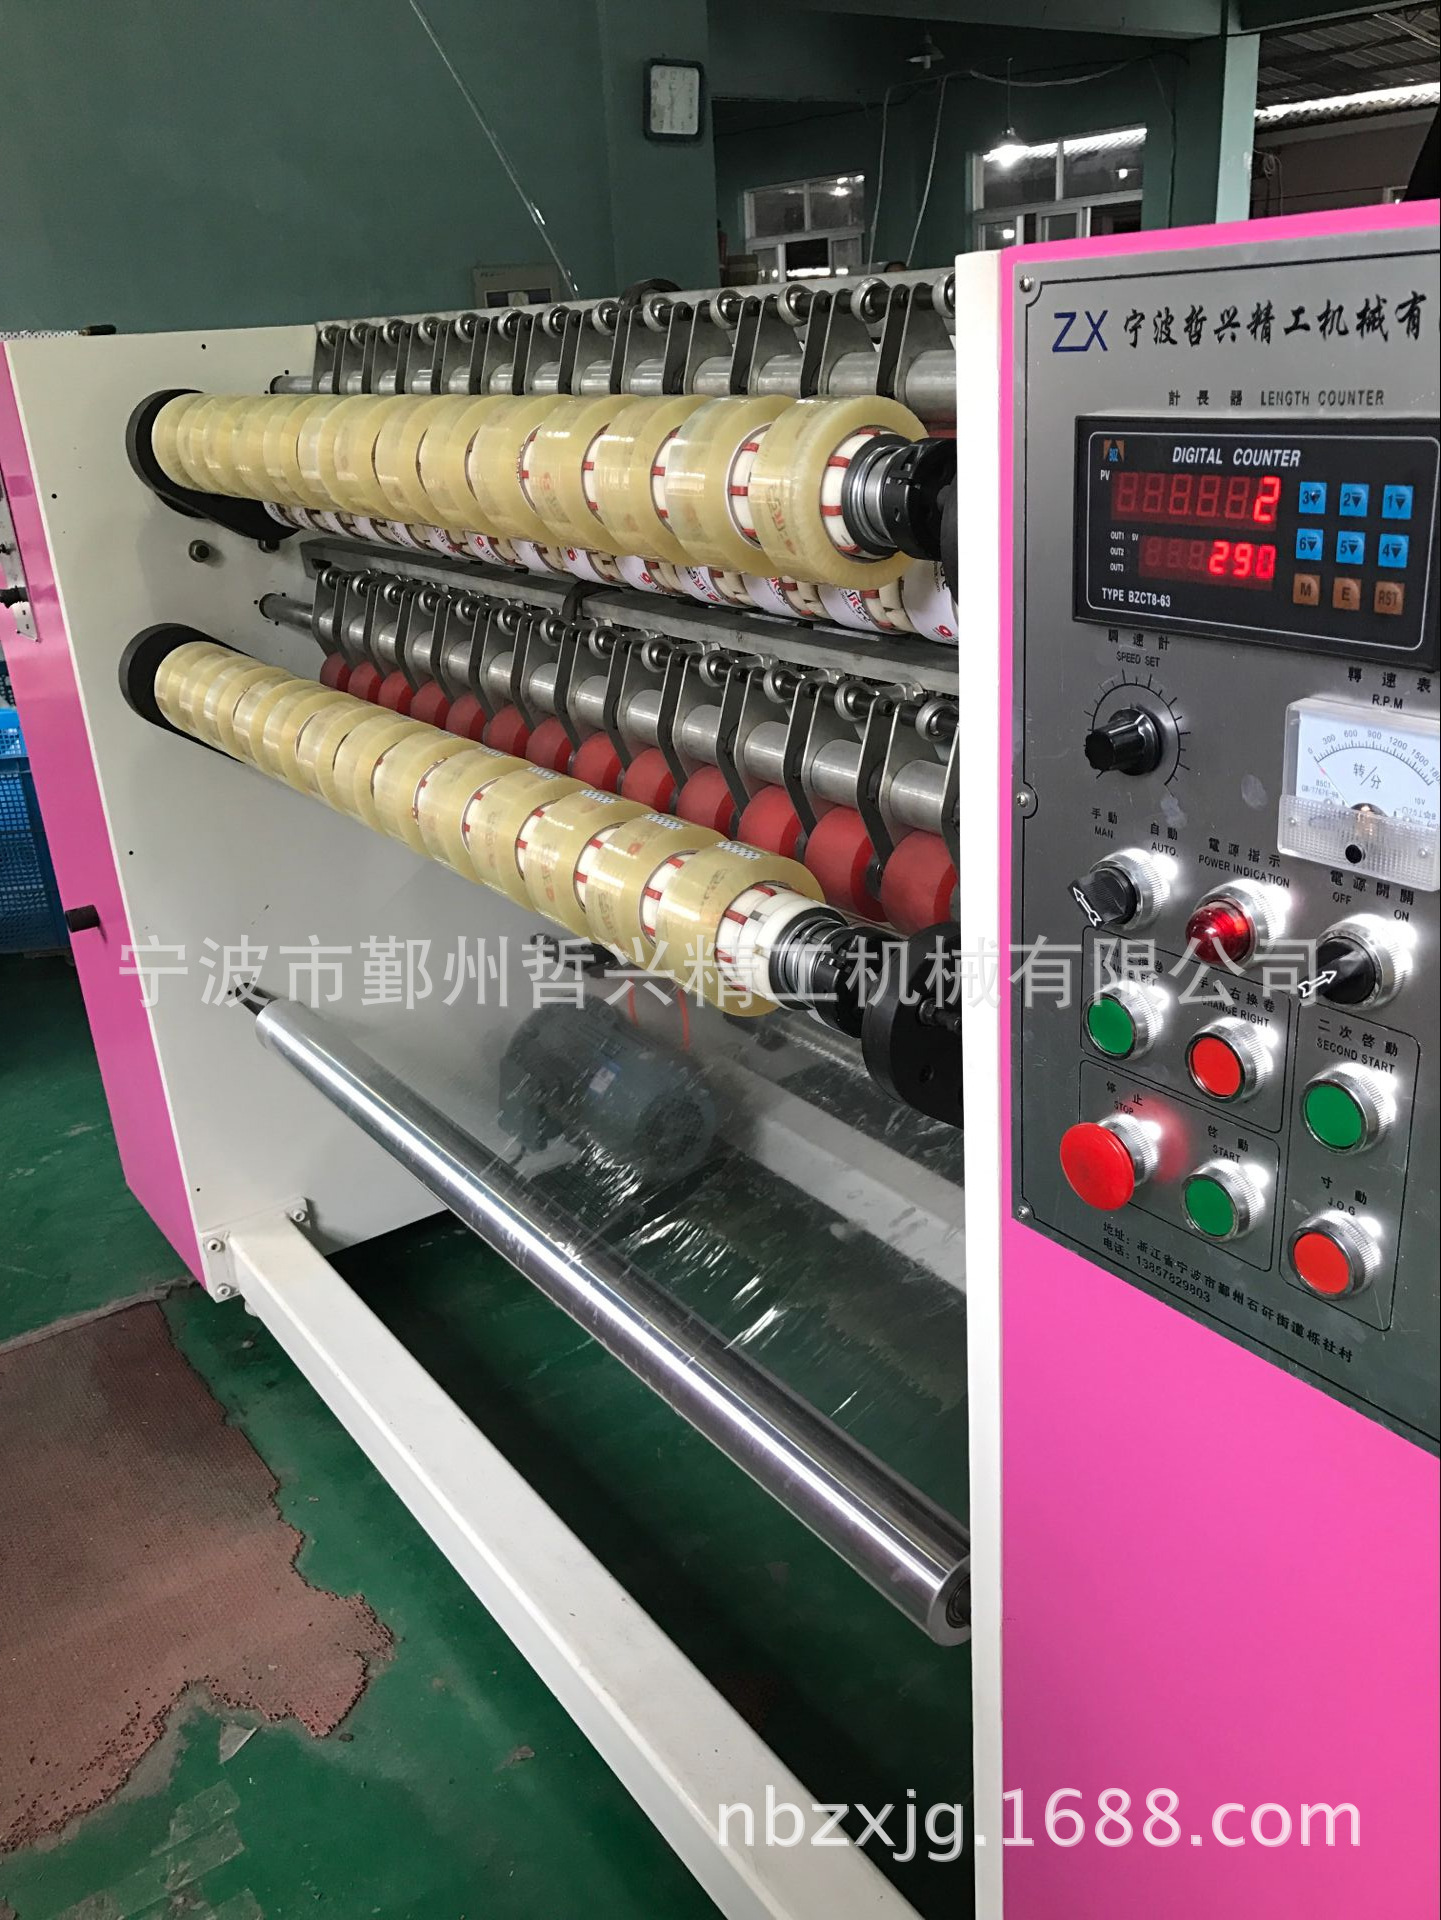 深圳市怀特包装火狐电竞机械有限公司专业从事胶粘带设备研究开发企业公司